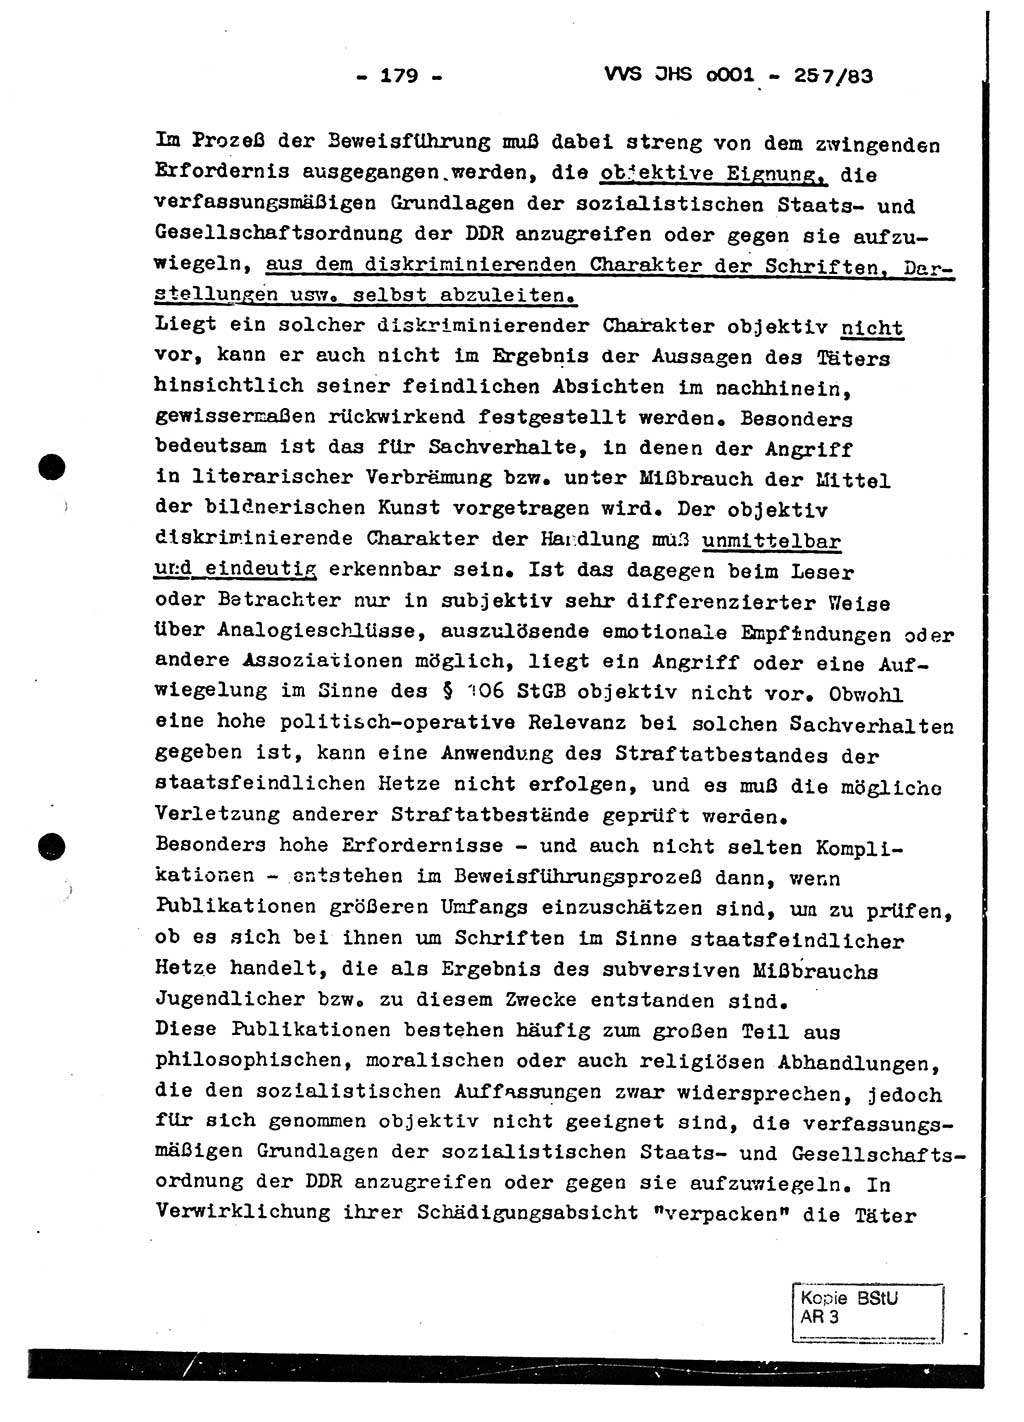 Dissertation, Oberst Helmut Lubas (BV Mdg.), Oberstleutnant Manfred Eschberger (HA IX), Oberleutnant Hans-Jürgen Ludwig (JHS), Ministerium für Staatssicherheit (MfS) [Deutsche Demokratische Republik (DDR)], Juristische Hochschule (JHS), Vertrauliche Verschlußsache (VVS) o001-257/83, Potsdam 1983, Seite 179 (Diss. MfS DDR JHS VVS o001-257/83 1983, S. 179)